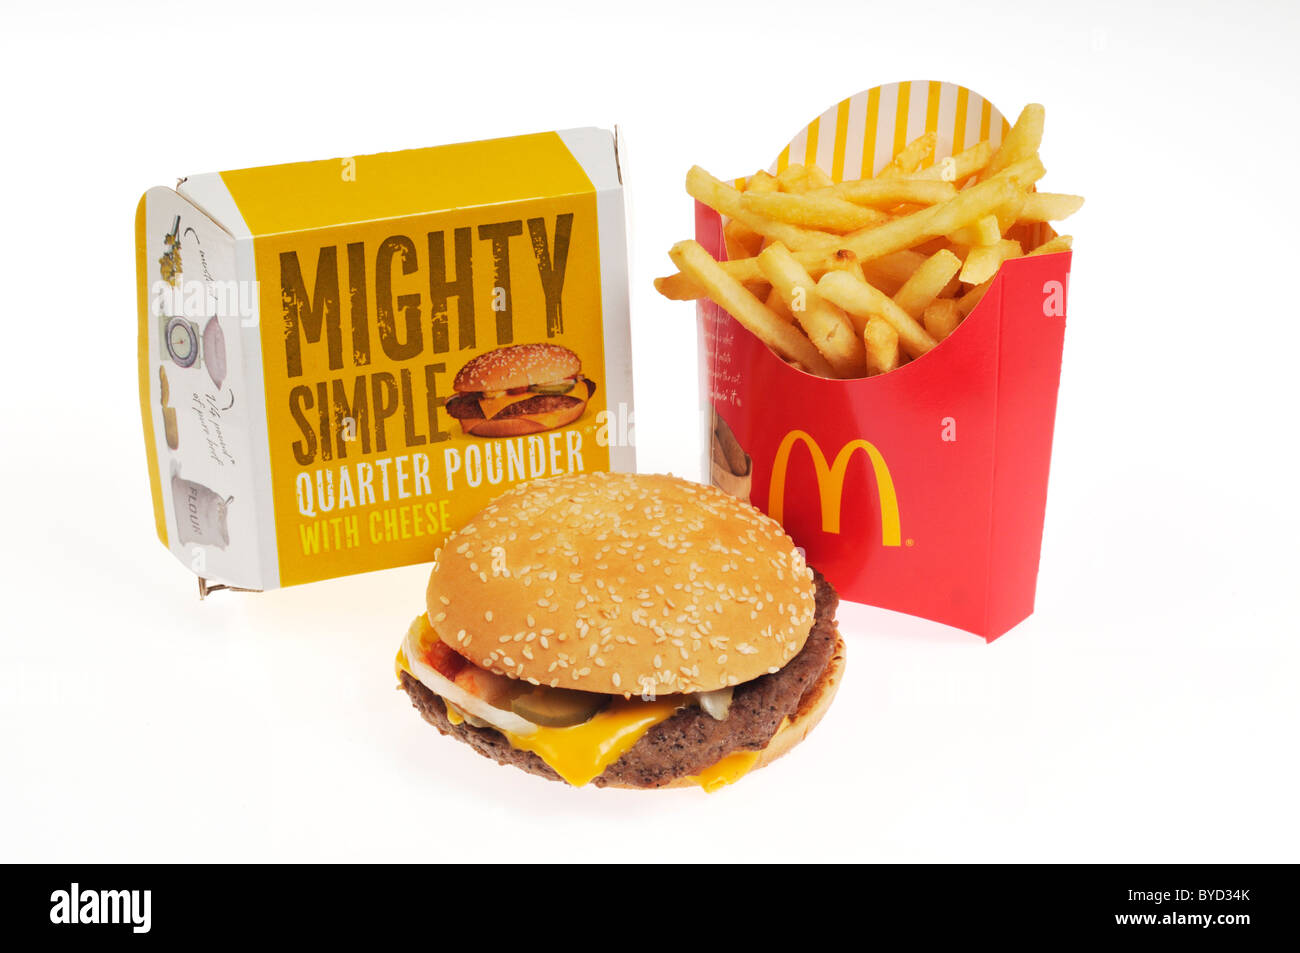 Mcdonald's trimestre pounder cheeseburger avec frites et les grands conteneurs sur fond blanc. Banque D'Images